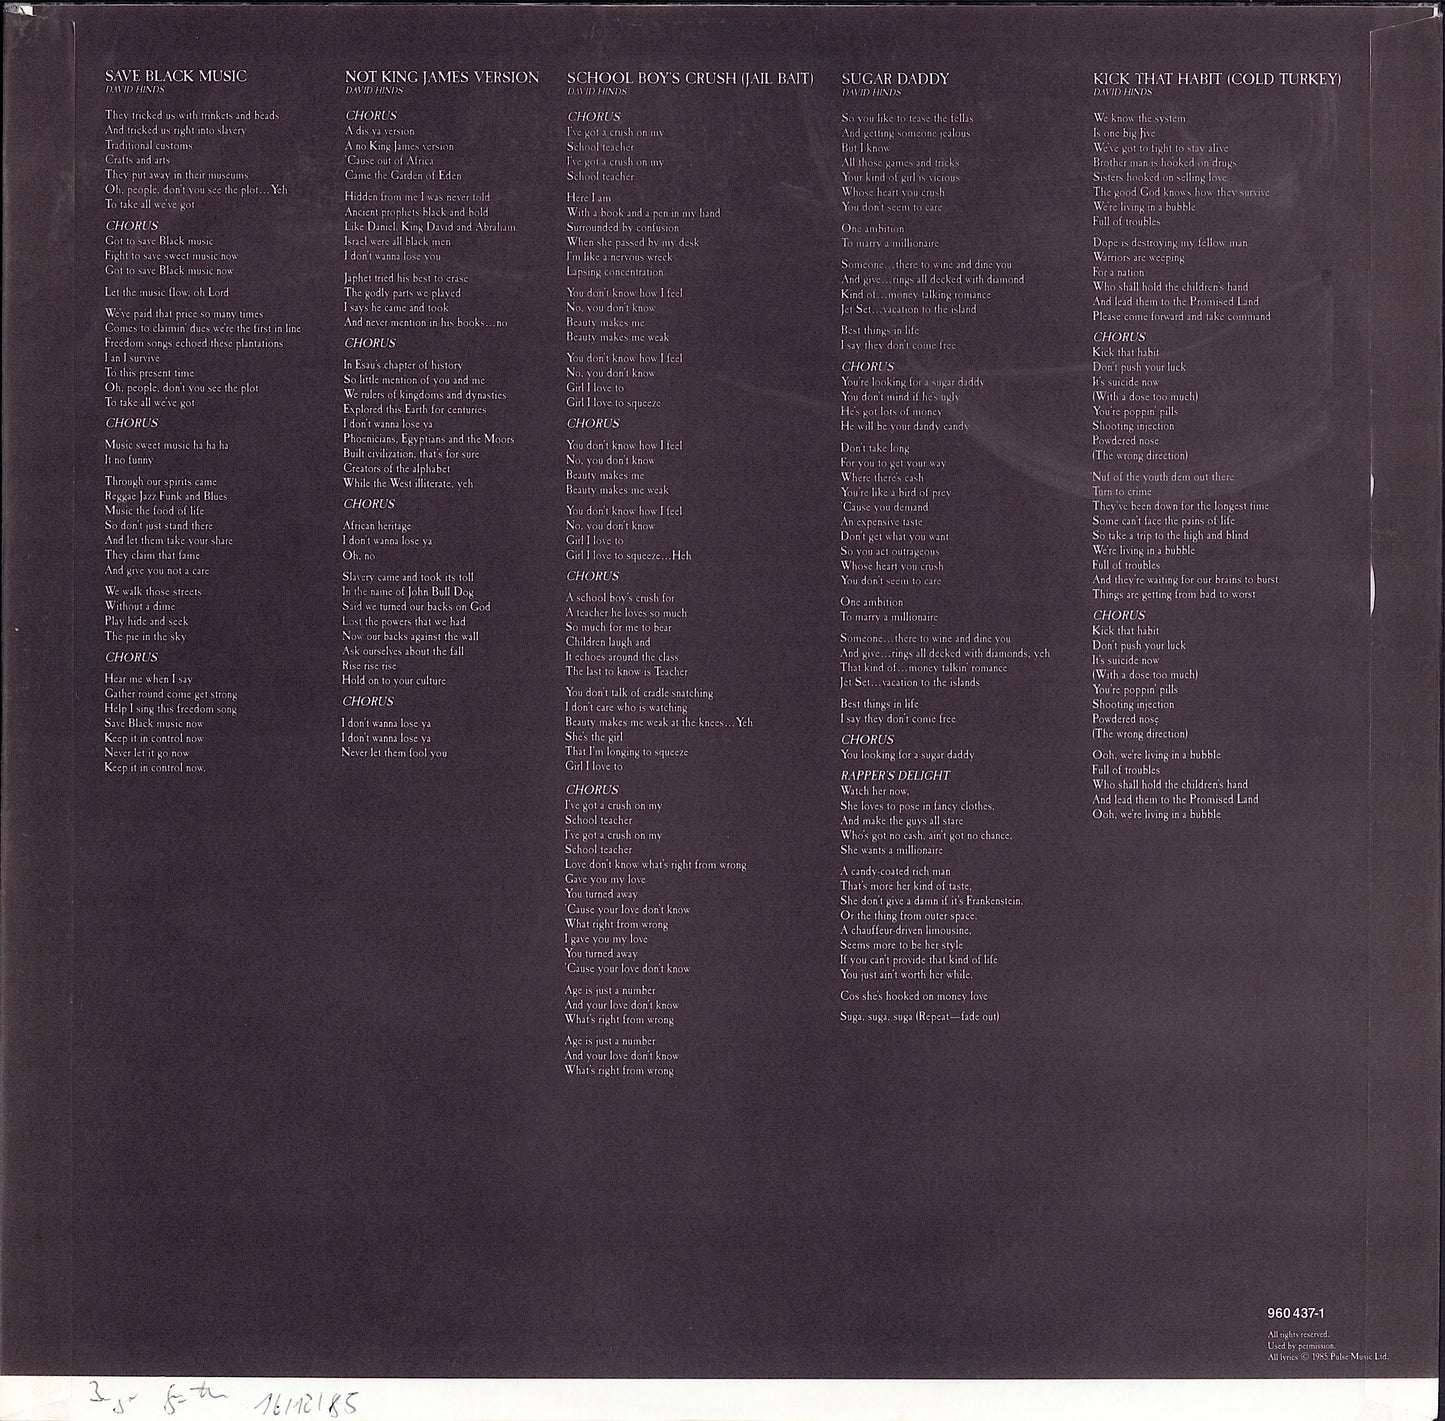 Steel Pulse - Babylon The Bandit Vinyl LP